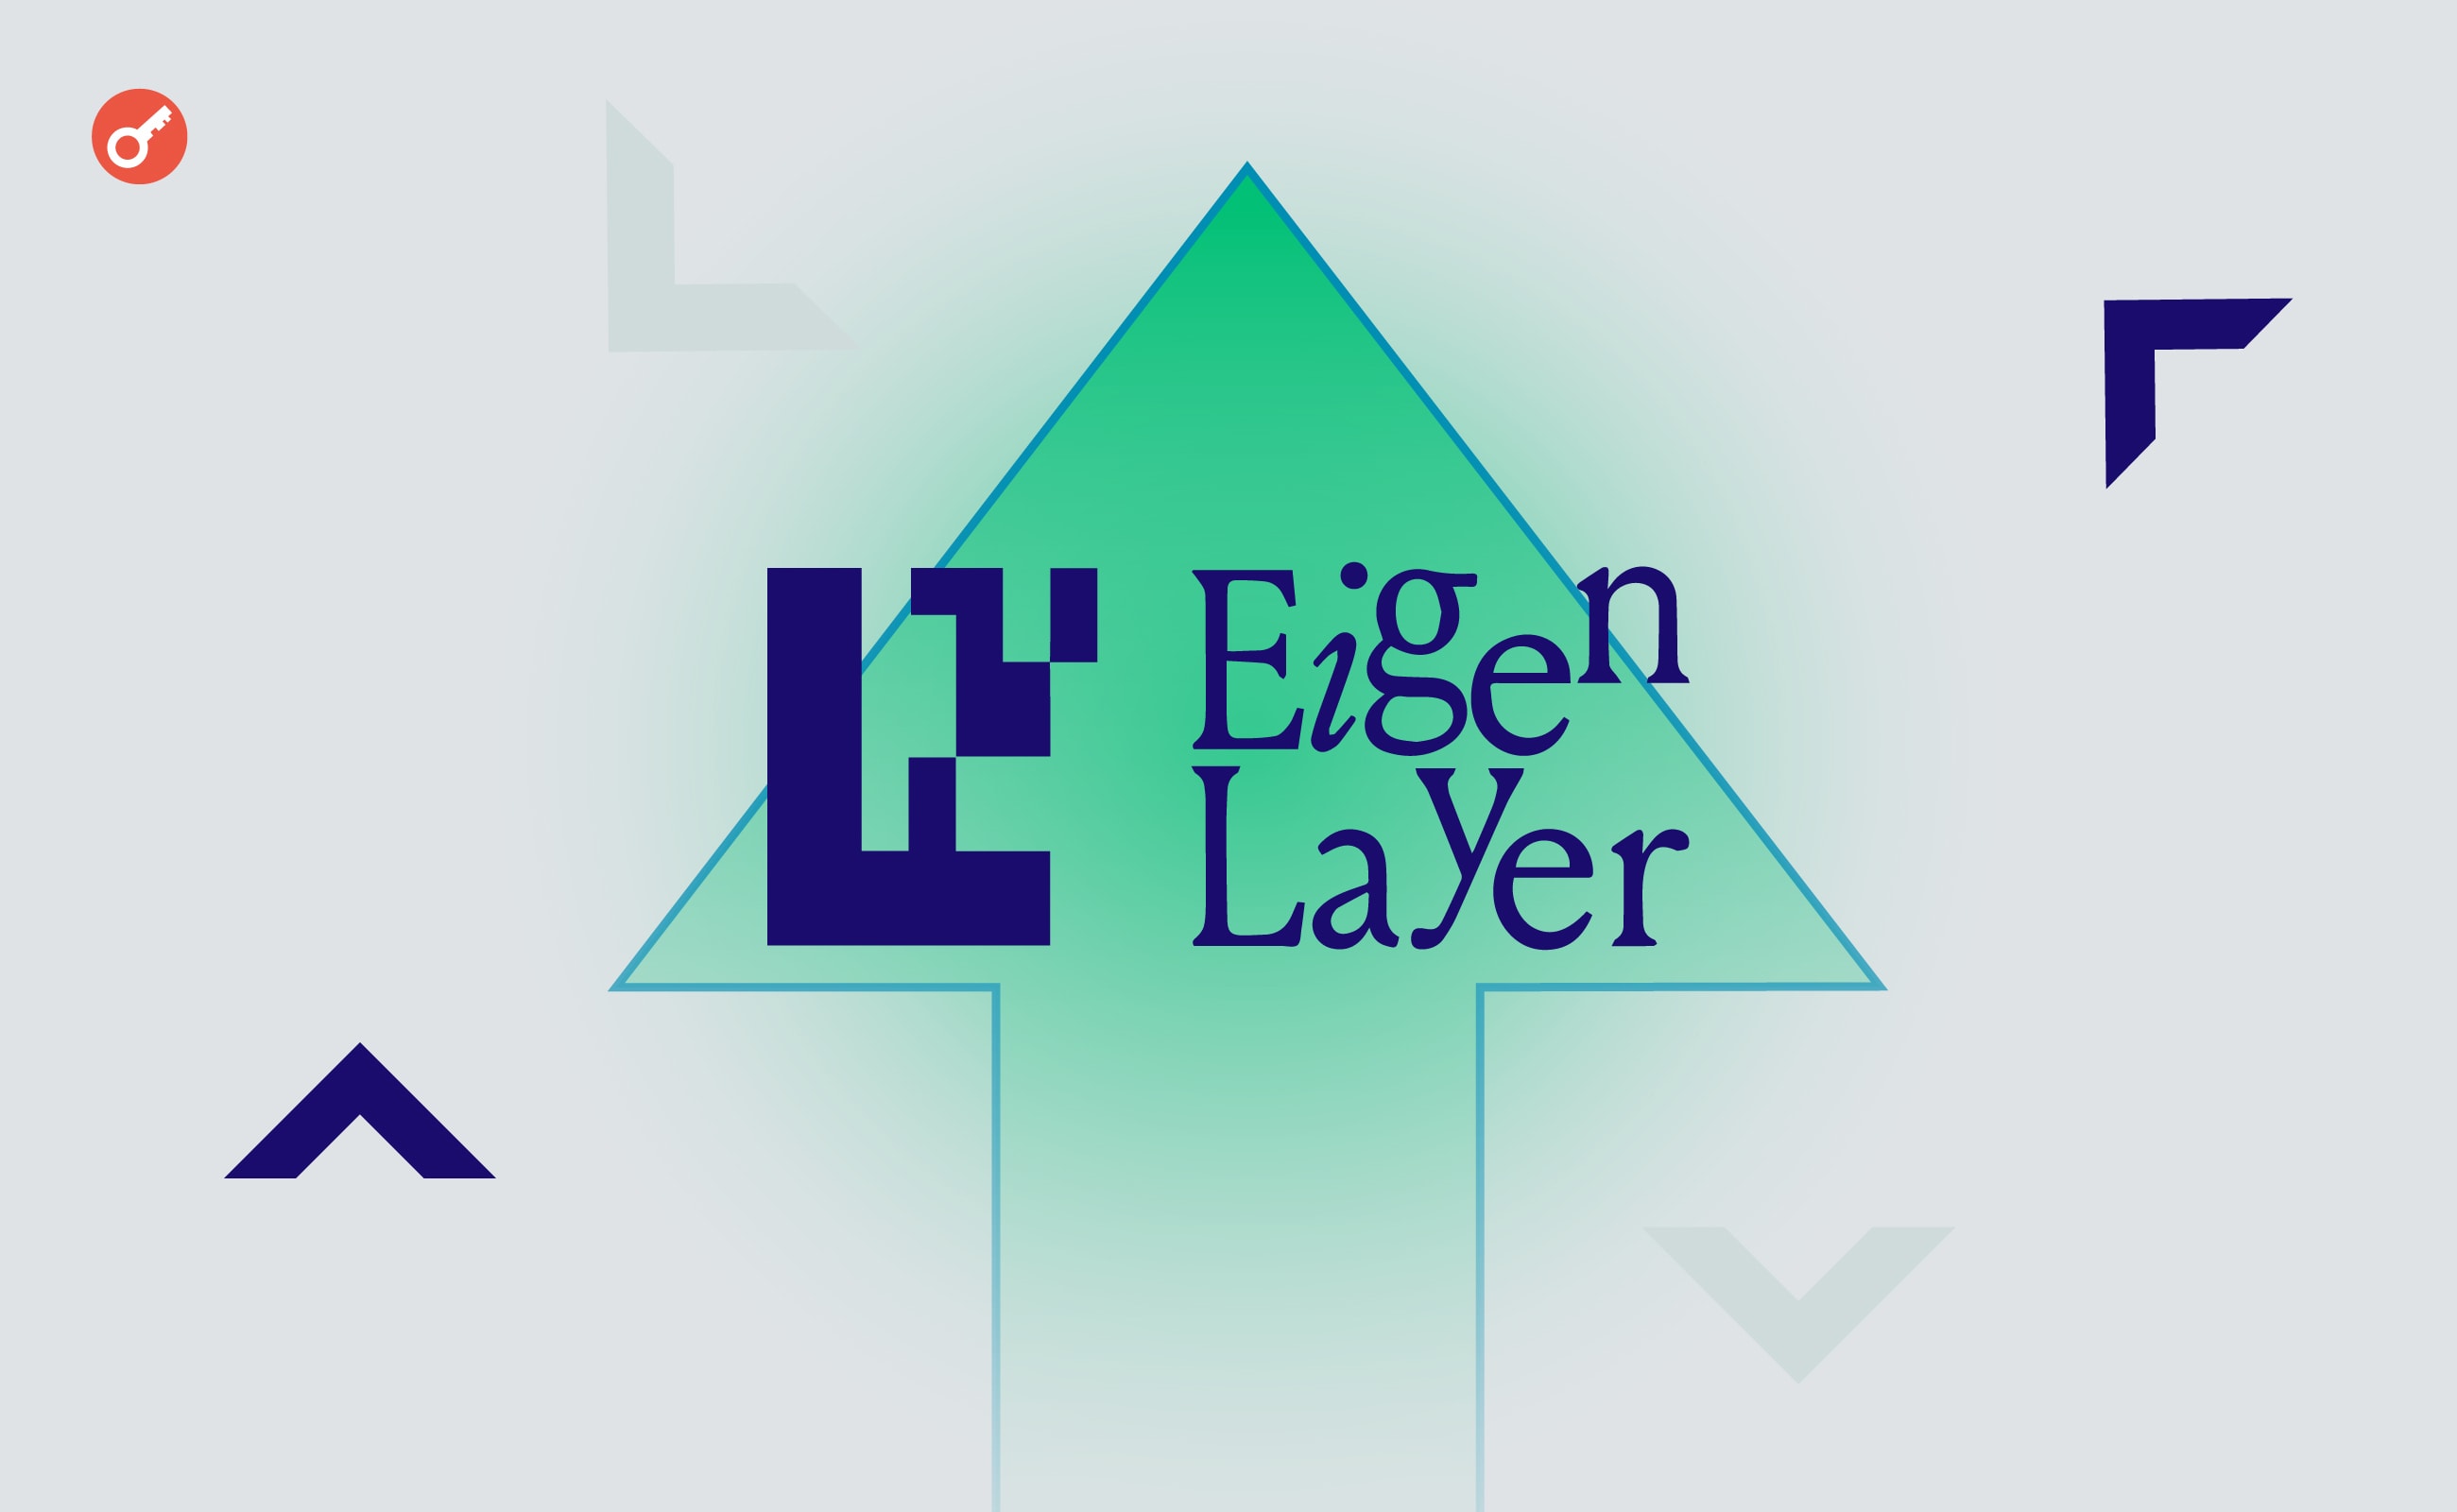 Протокол EigenLayer объявил о развертывании мейннета и запуске EigenDA. Заглавный коллаж новости.